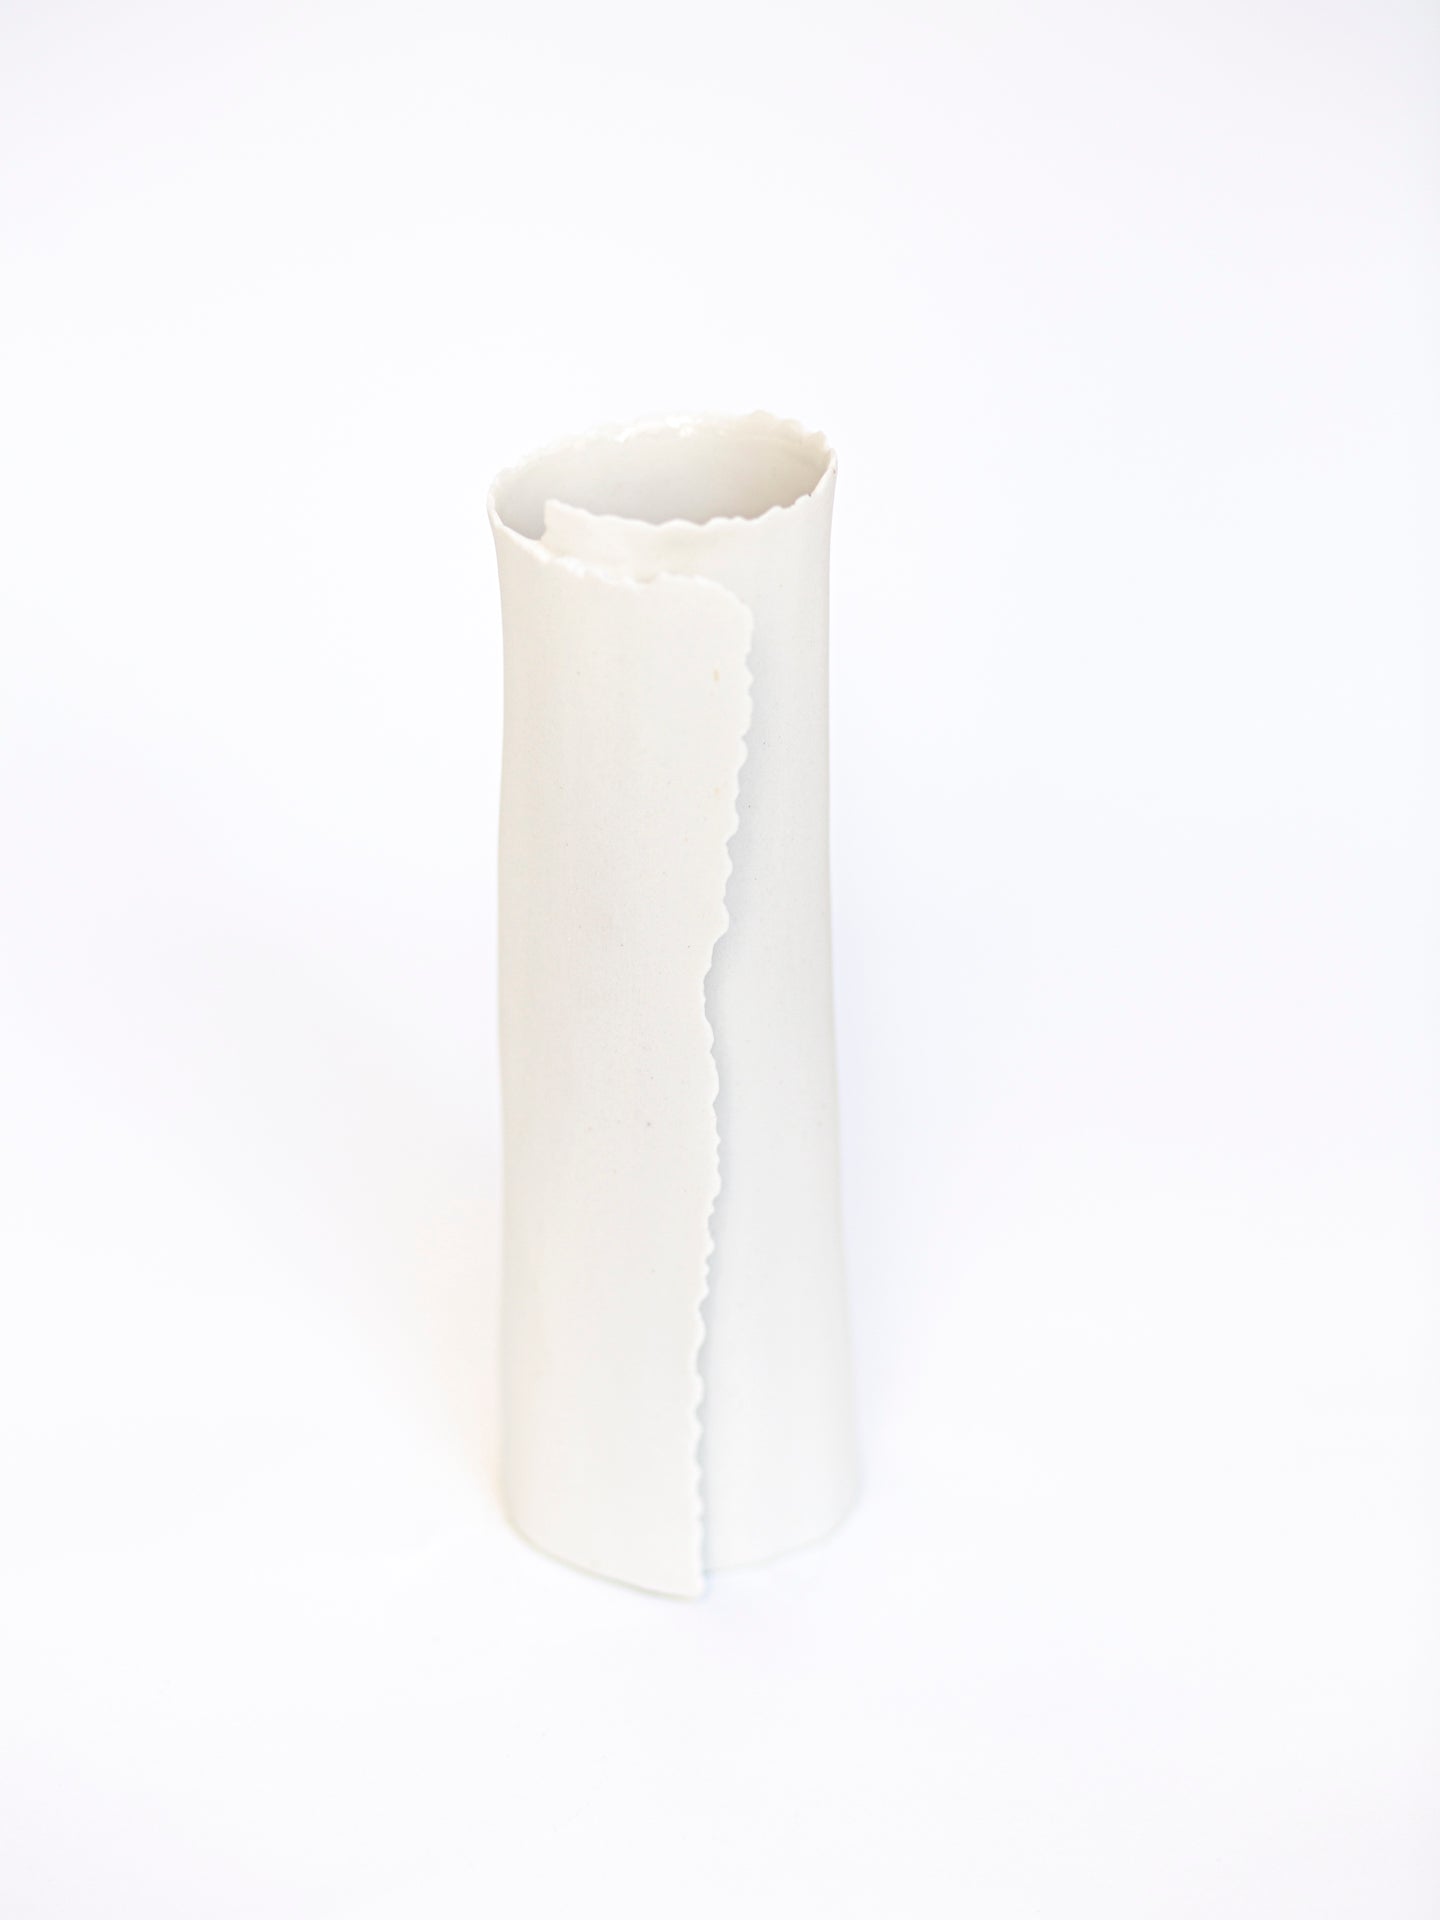 ARK 1 vase biscuit porcelain H=18cm, D=5,5cm